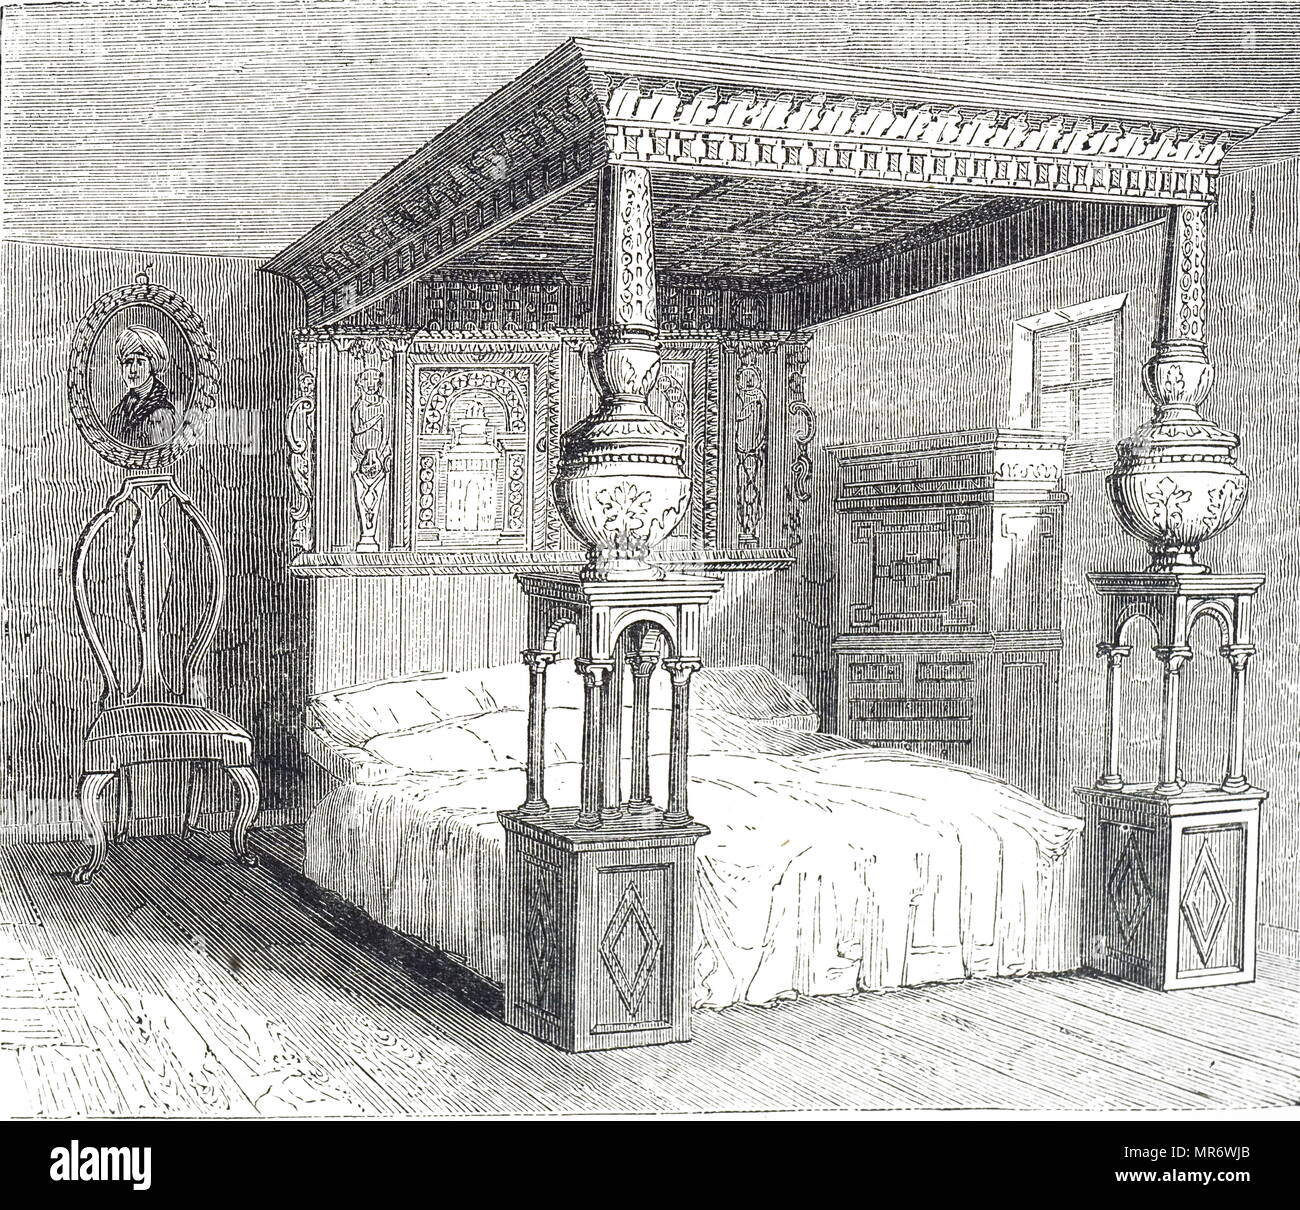 Kupferstich mit der Darstellung der großen Bett von Ware, eine extrem große Eiche Himmelbett, geschnitzt mit Intarsien, war ursprünglich in der White Hart Inn in Ware, England untergebracht. Vom 19. Jahrhundert Stockfoto